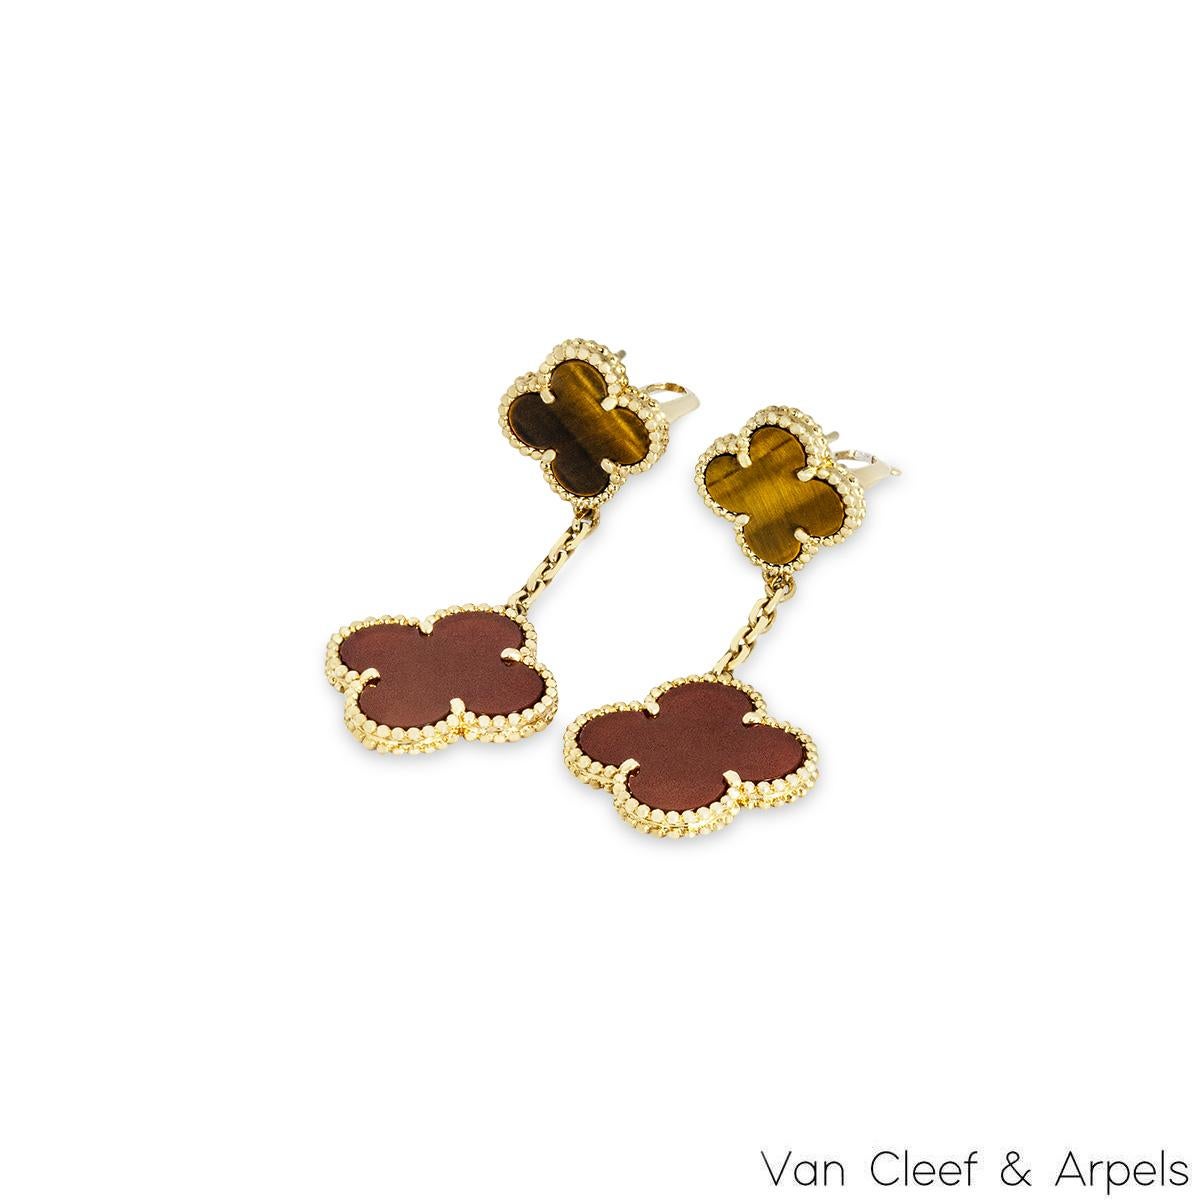 Ein ikonisches Paar Ohrringe aus 18 Karat Gelbgold von Van Cleef & Arpels aus der Kollektion Magic Alhambra. Bestehend aus 2 vierblättrigen Kleeblattmotiven, die sich in der Größe abwechseln und durch einen perlenbesetzten Außenrand ergänzt werden,